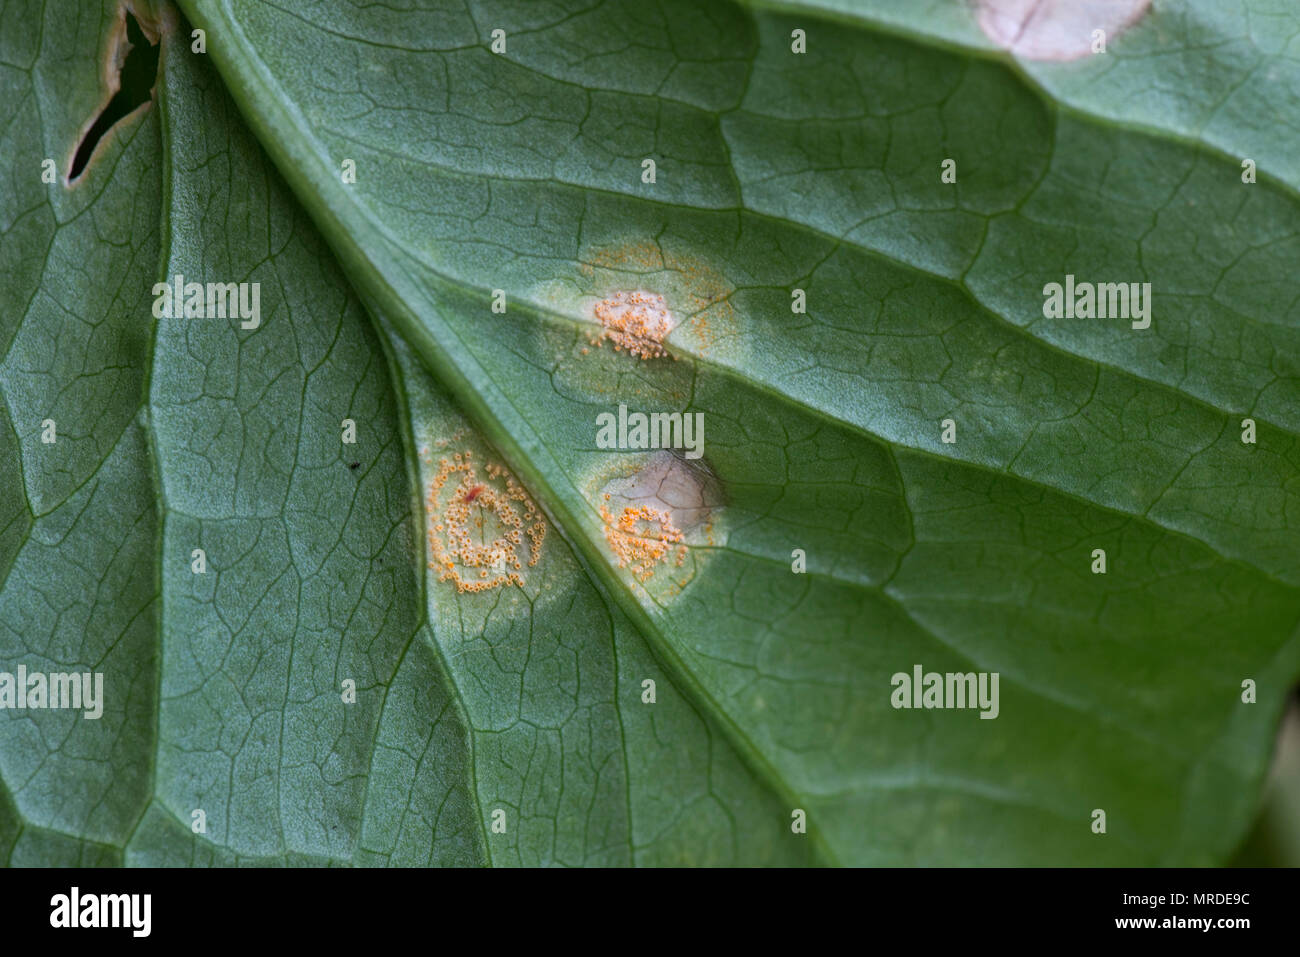 Arum ou la rouille, Puccinia ramson sessilis, des pustules et des lésions sur les feuilles d'arum sauvage, Lords et Ladies, Arum maculatum Banque D'Images